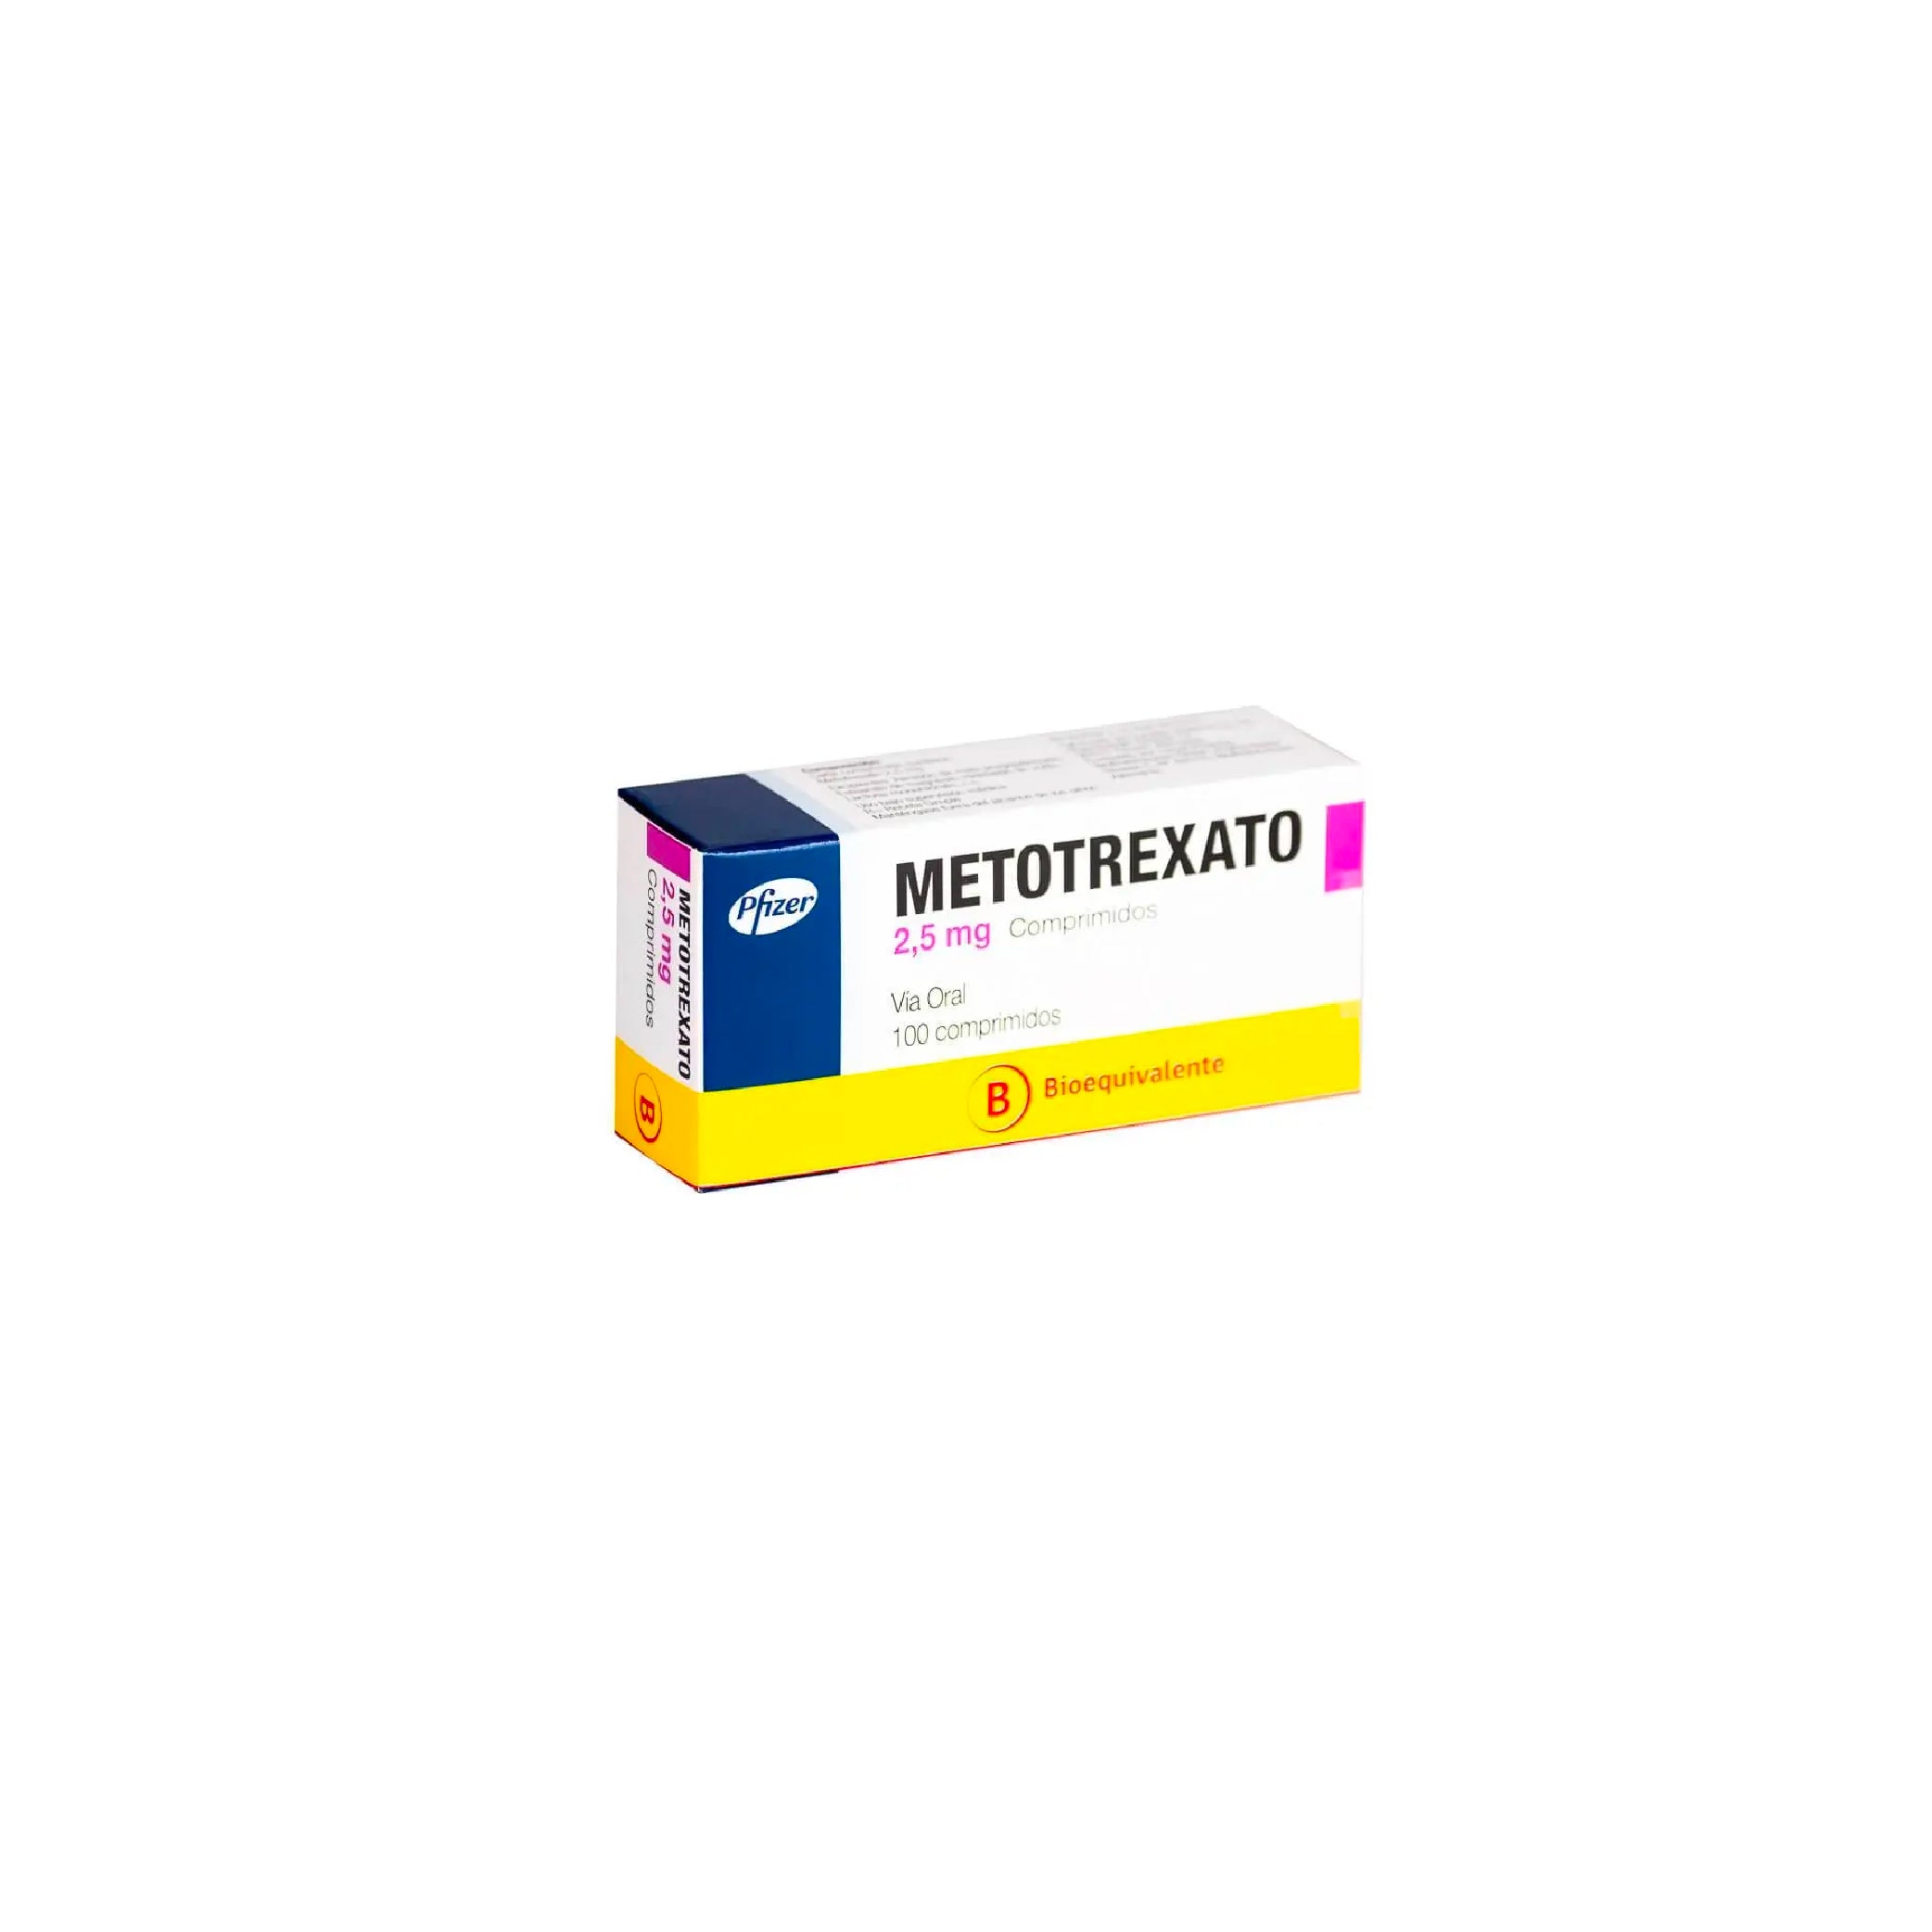 METOTREXATO 2.5mg Comp. x 100